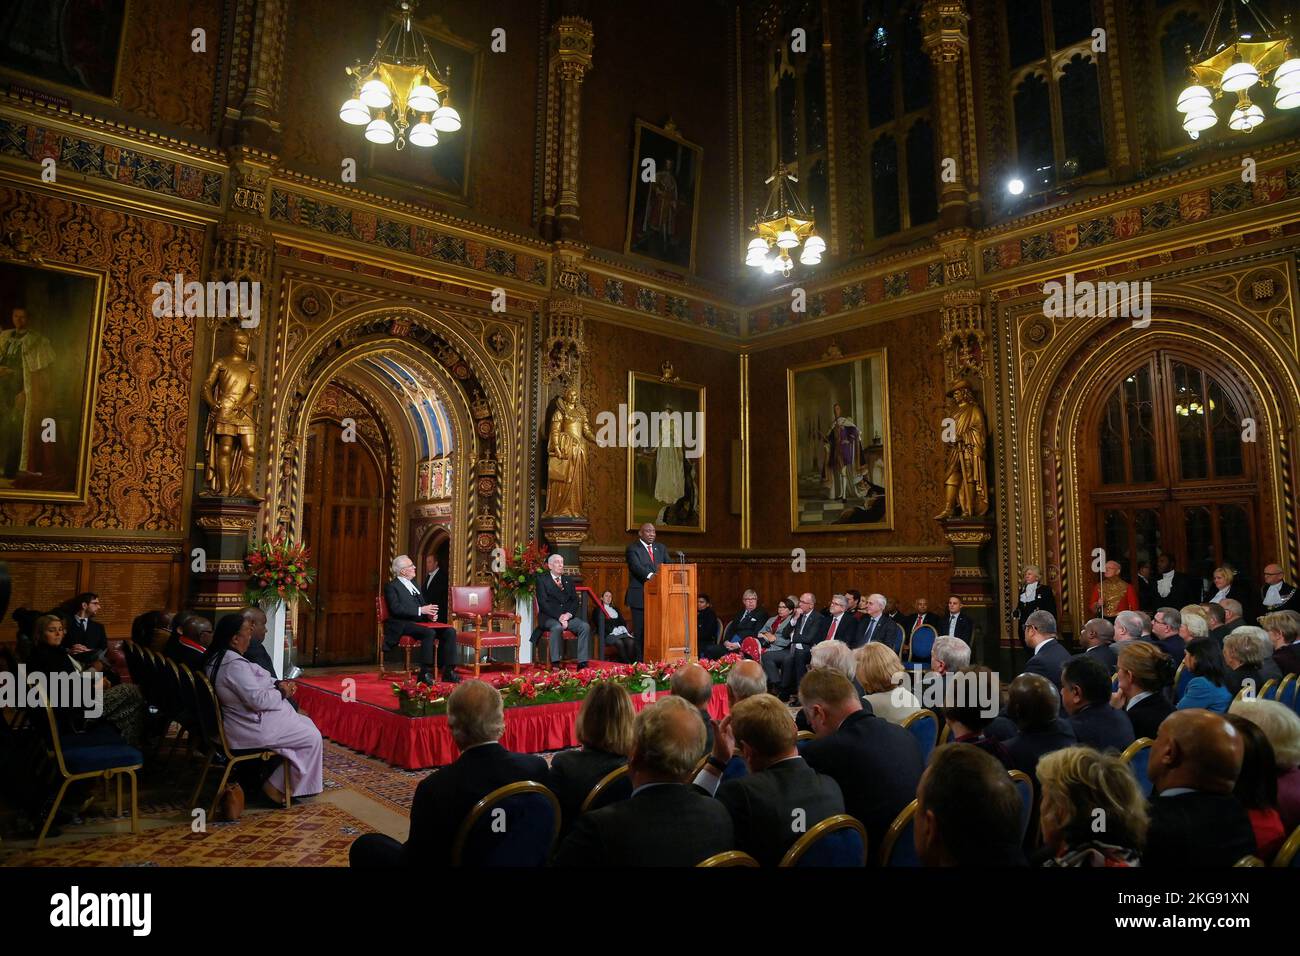 El Presidente Cyril Ramaphosa de Sudáfrica se dirige a diputados y colegas de la Royal Gallery del Palacio de Westminster en Londres, como parte de su visita de Estado al Reino Unido. Fecha de la foto: Martes 22 de noviembre de 2022. Foto de stock